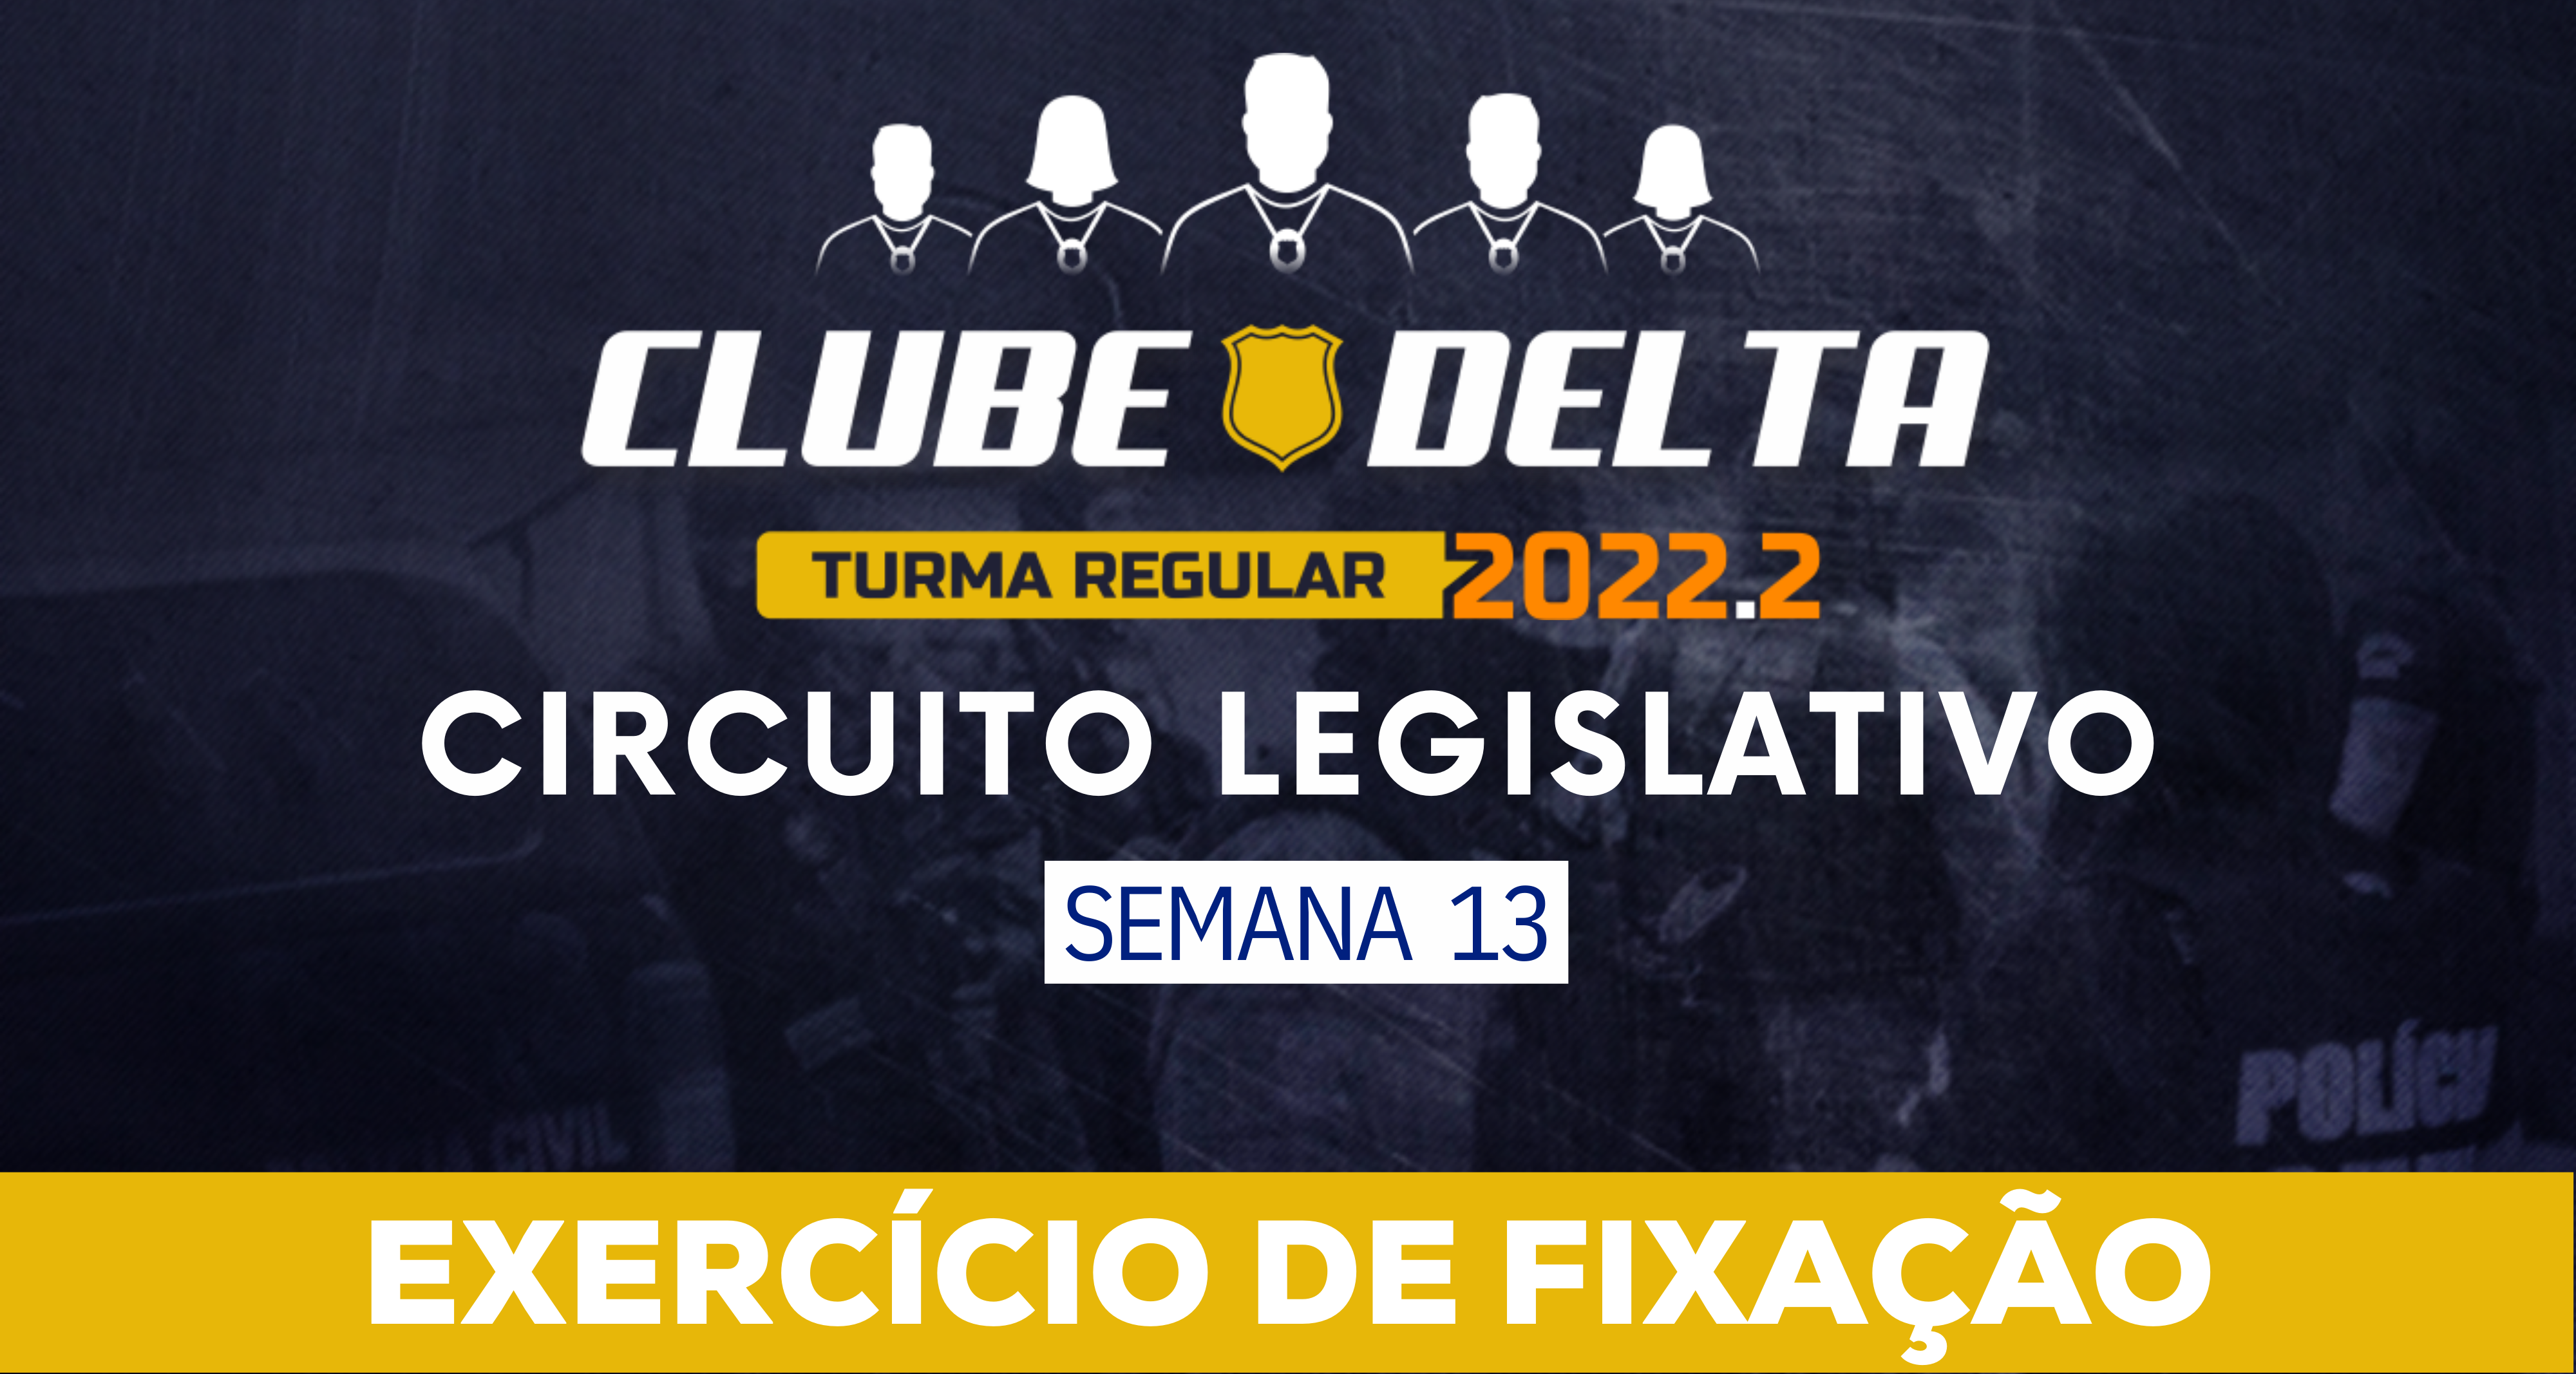 Circuito Legislativo 2022.2 (Clube Delta - Semana 13)